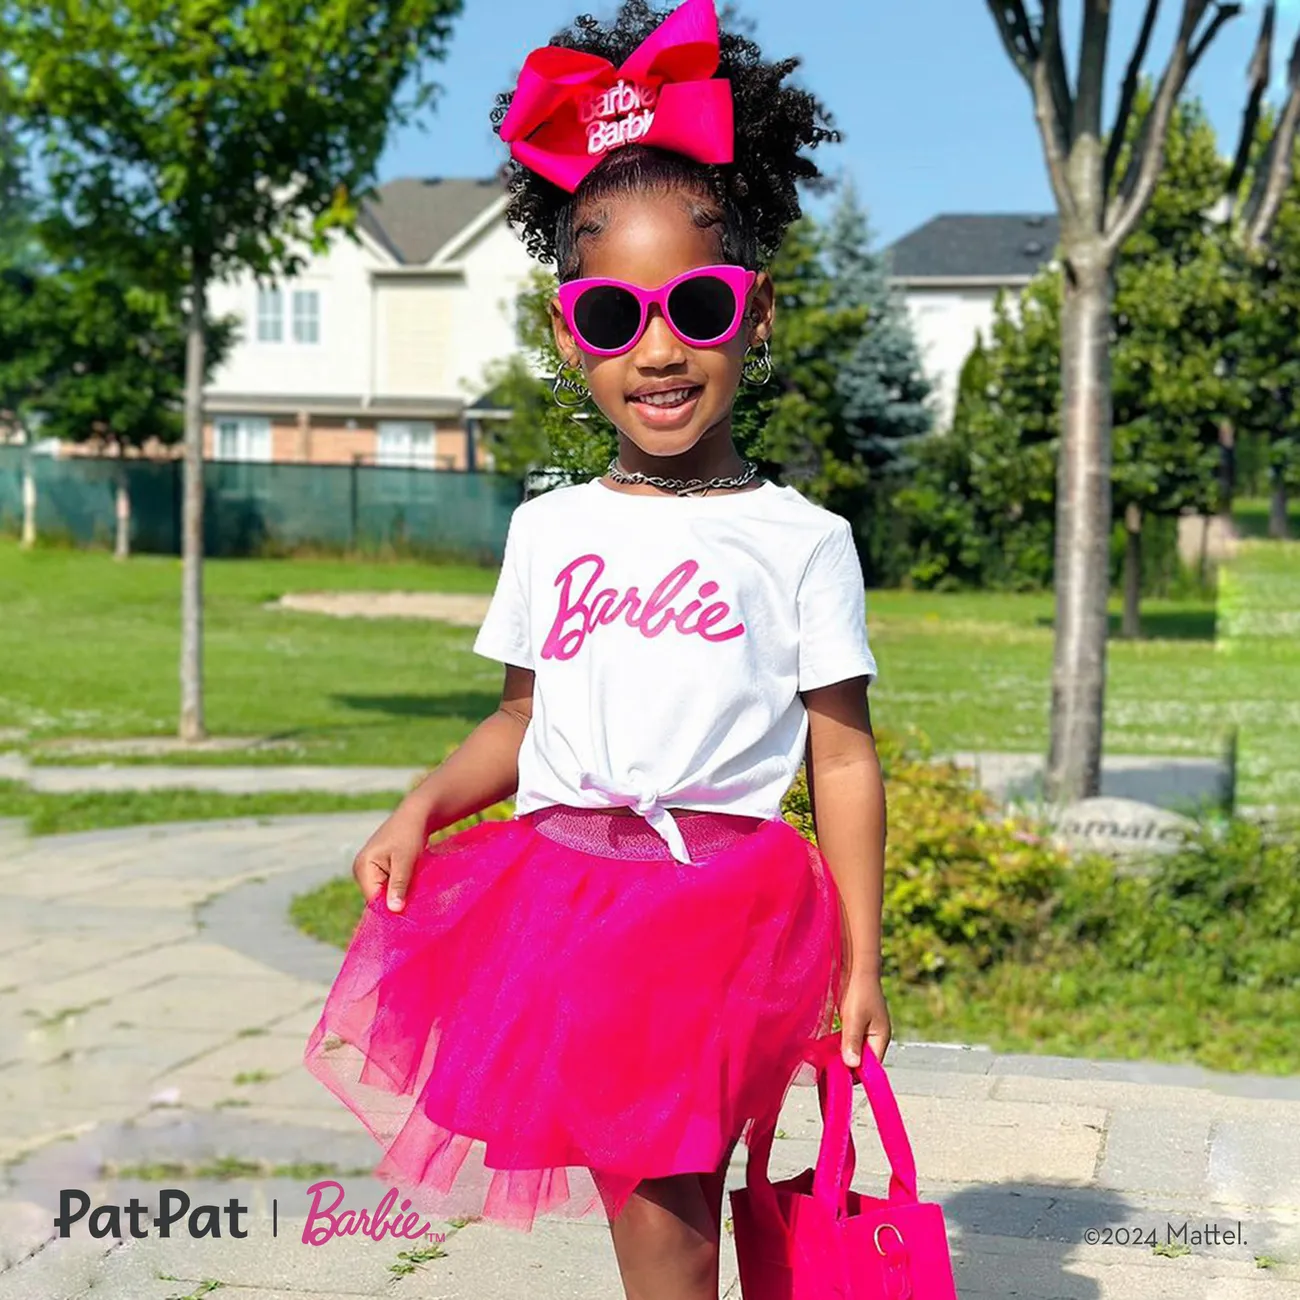 Barbie 2 unidades Niño pequeño Chica A capas Elegante Traje de falda pinkywhite big image 1